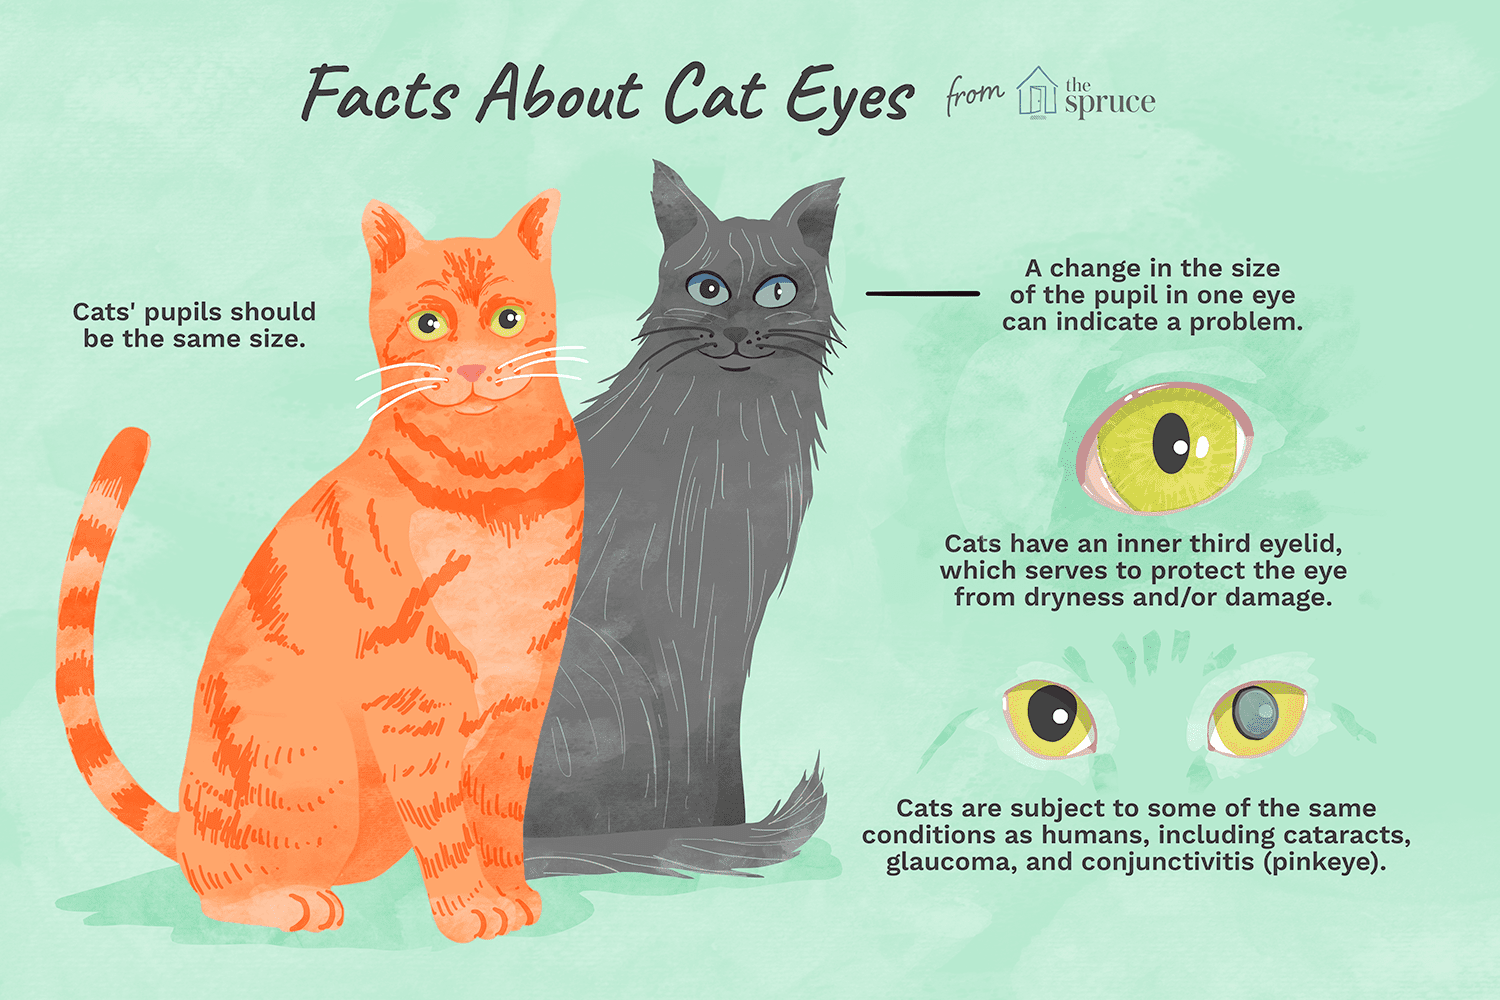 Kočky a jejich velmi jedinečné oči